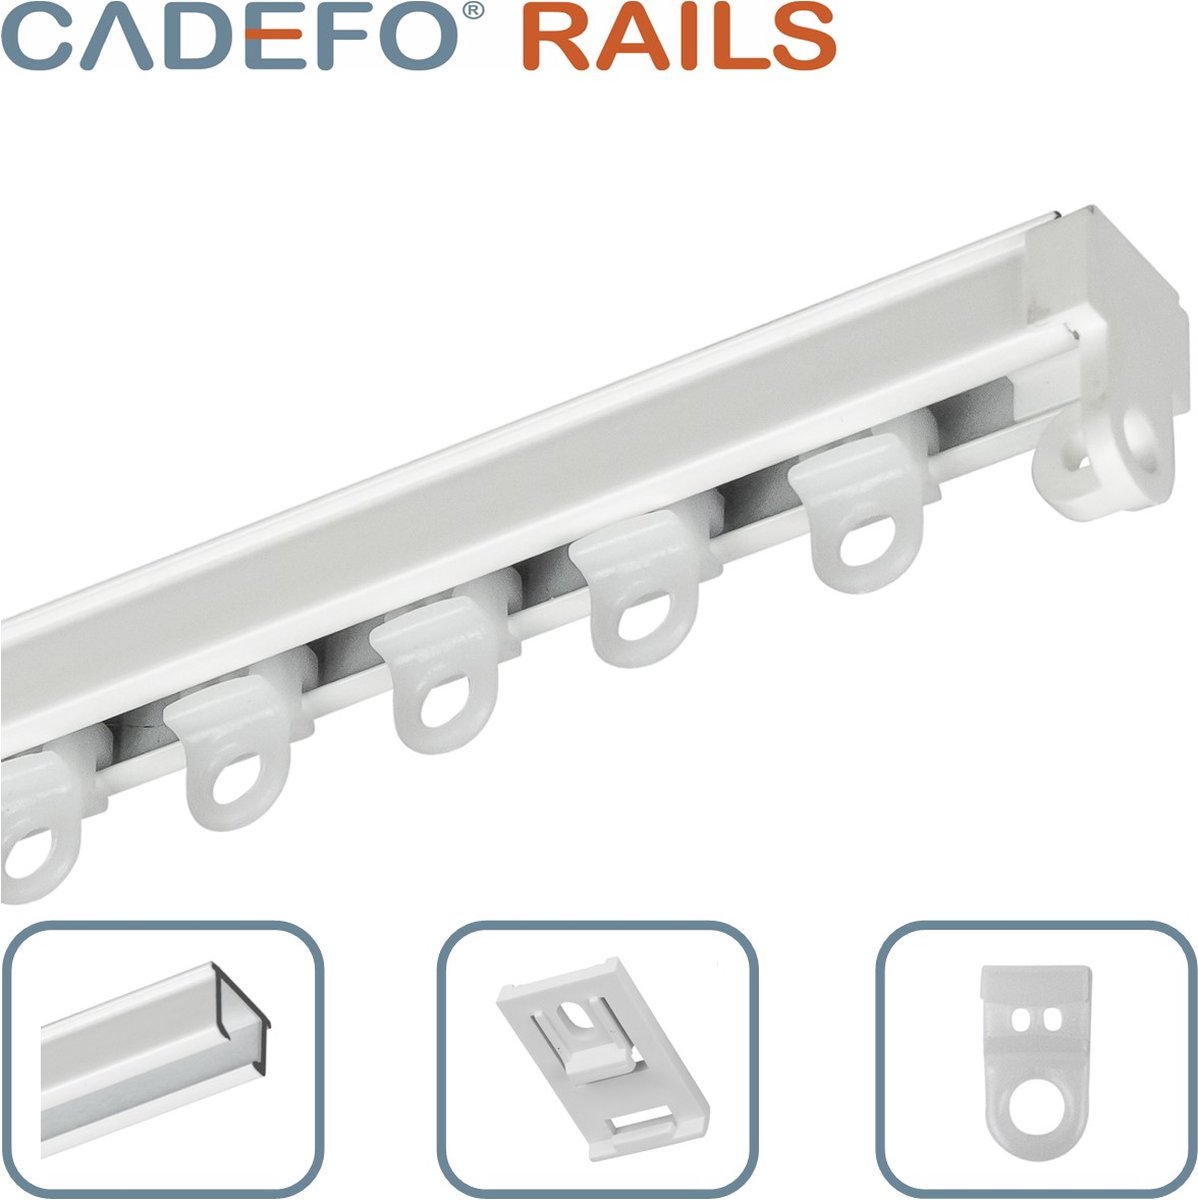 CADEFO RAILS (401 - 450 cm) Gordijnrails - Compleet op maat! - UIT 1 STUK - Leverbaar tot 6 meter - Plafondbevestiging - Lengte 432 cm